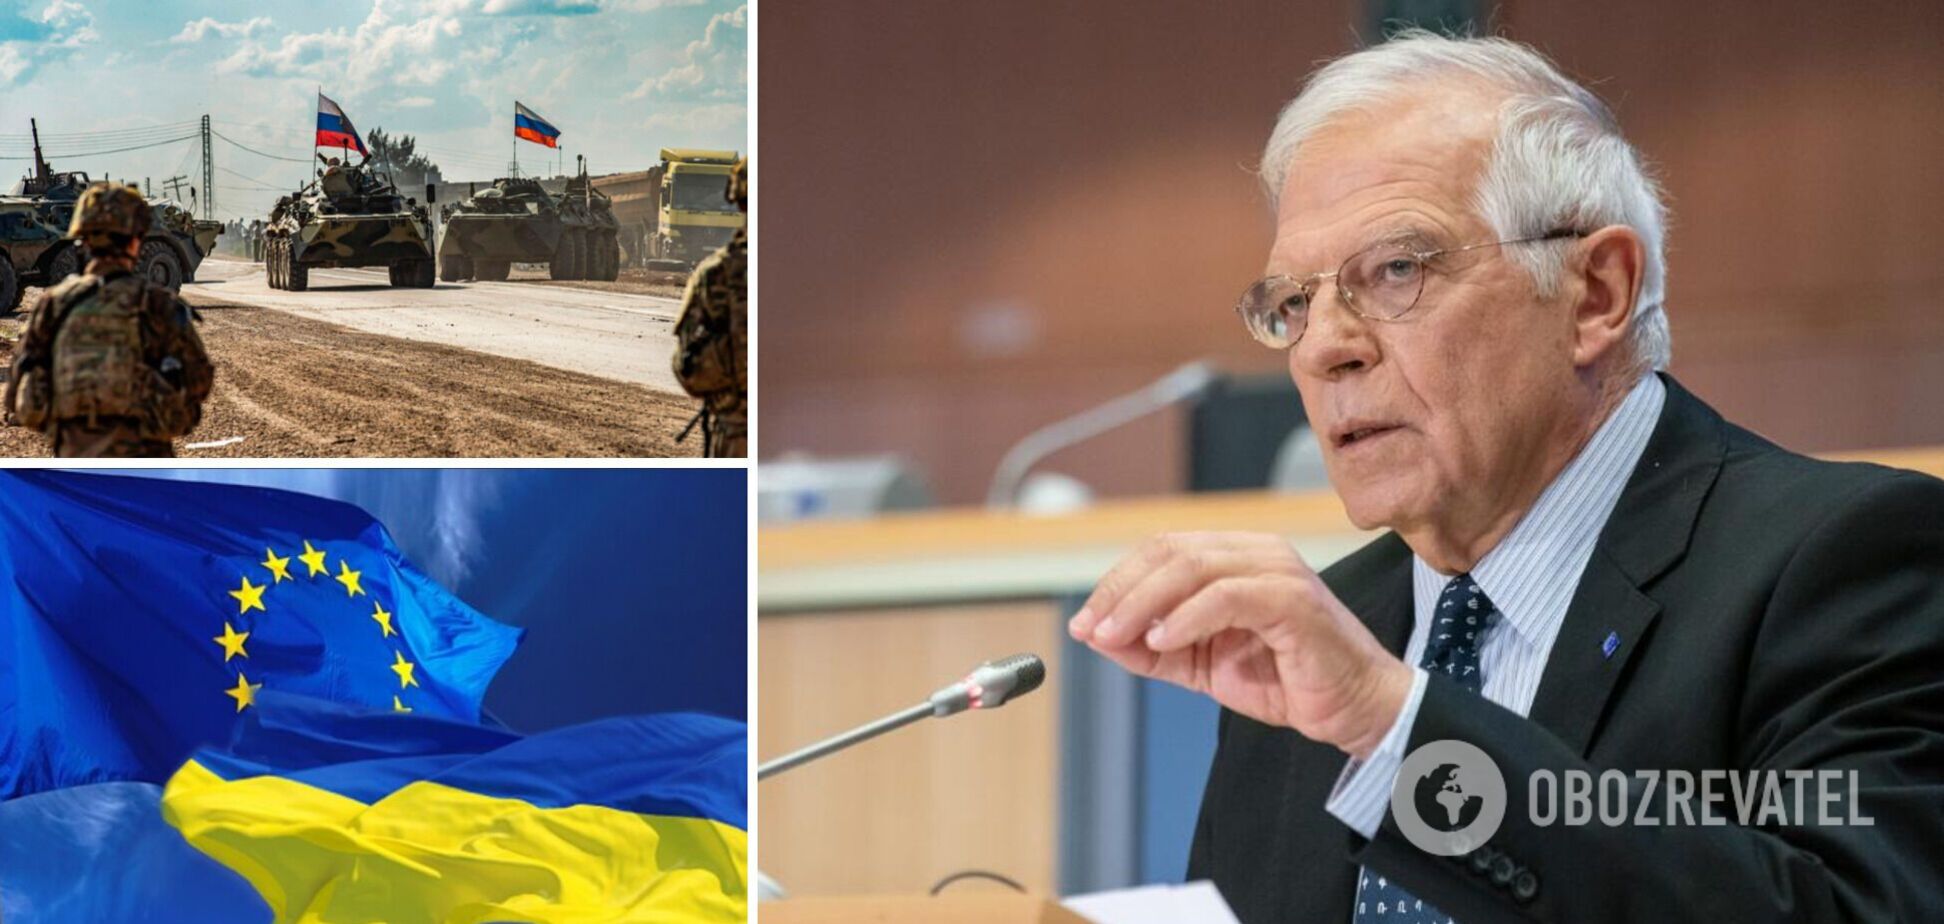 Глава дипломатии ЕС Боррель посетит Донбасс и Киев: названа дата